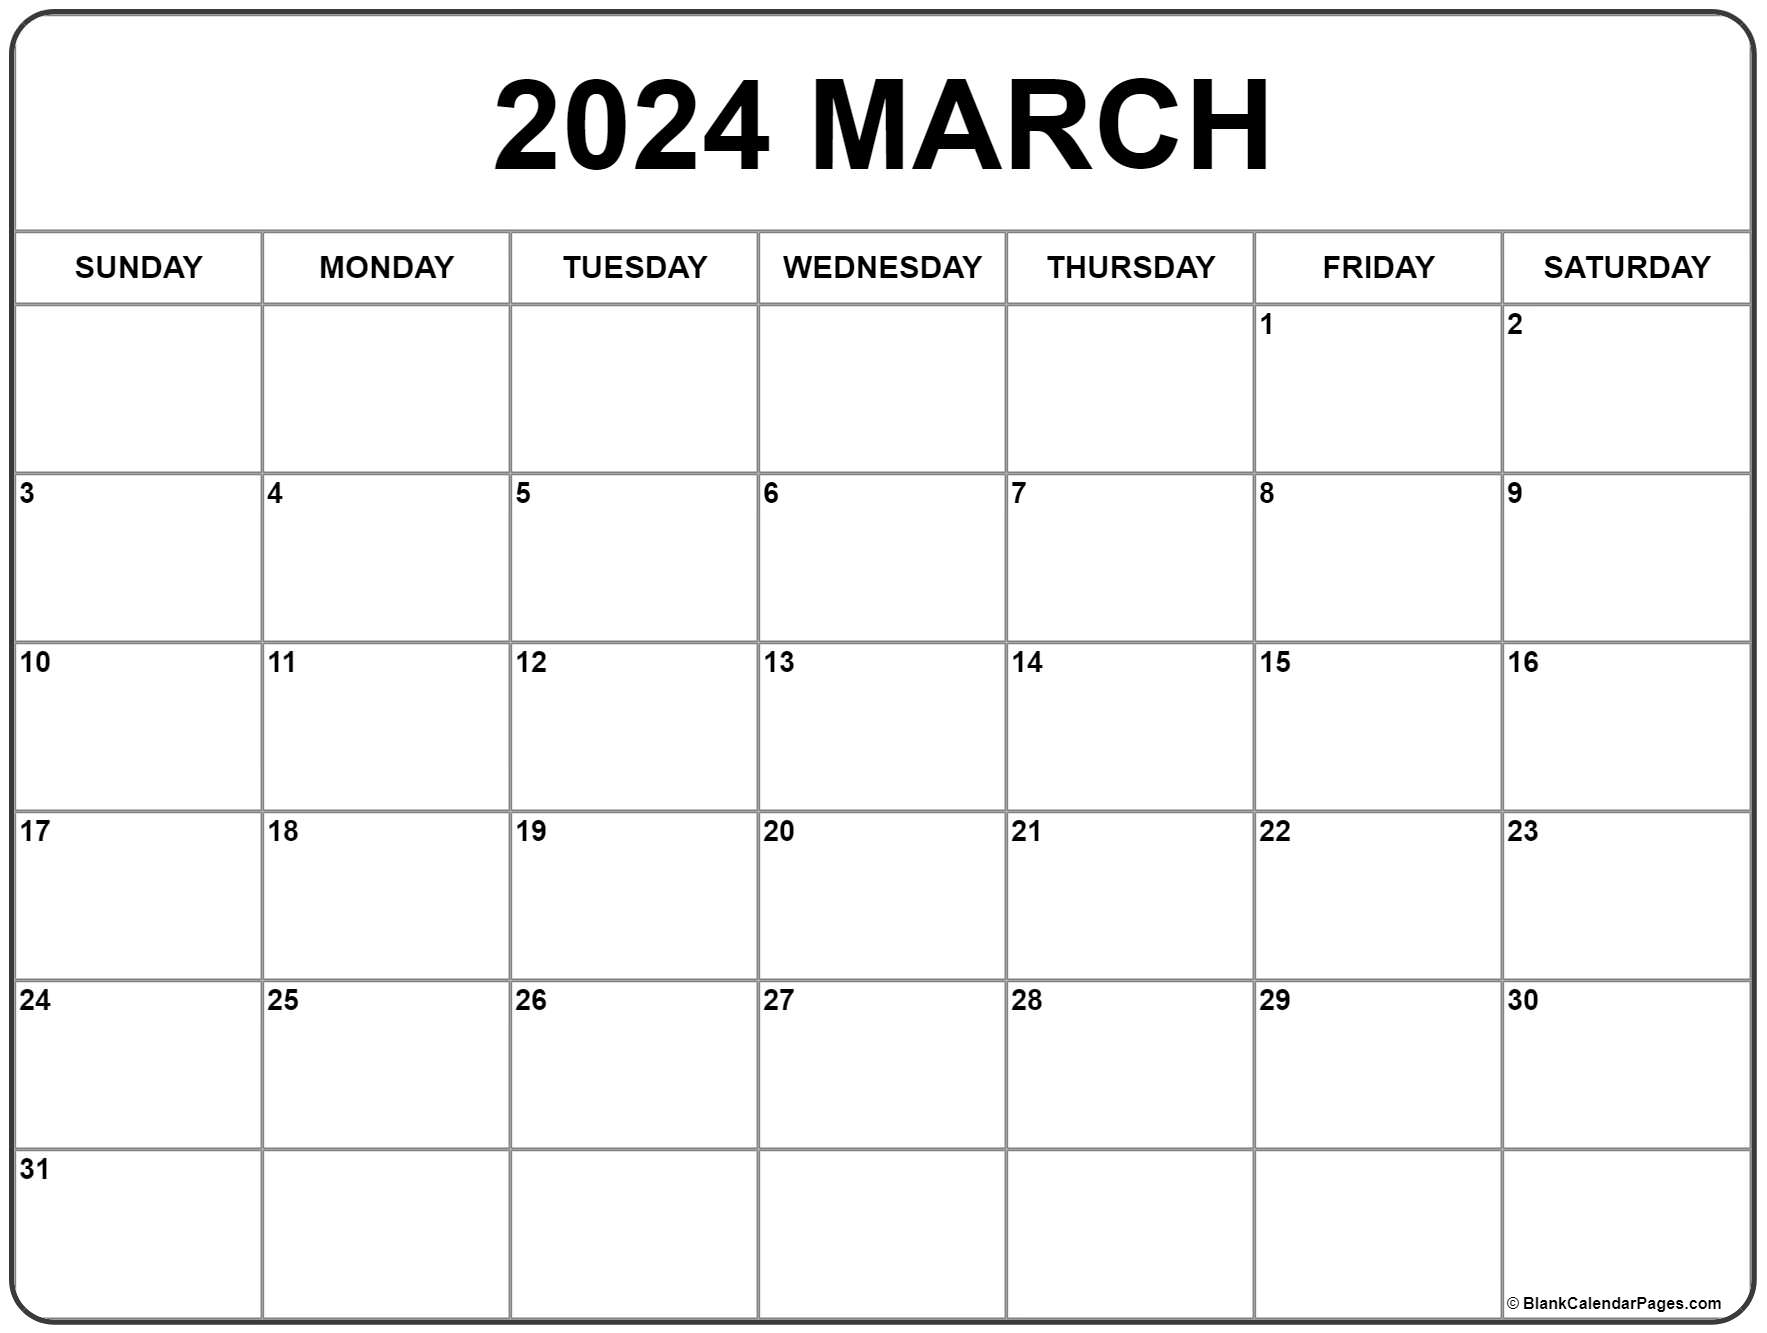 March 2021 calendar free printable calendar templates